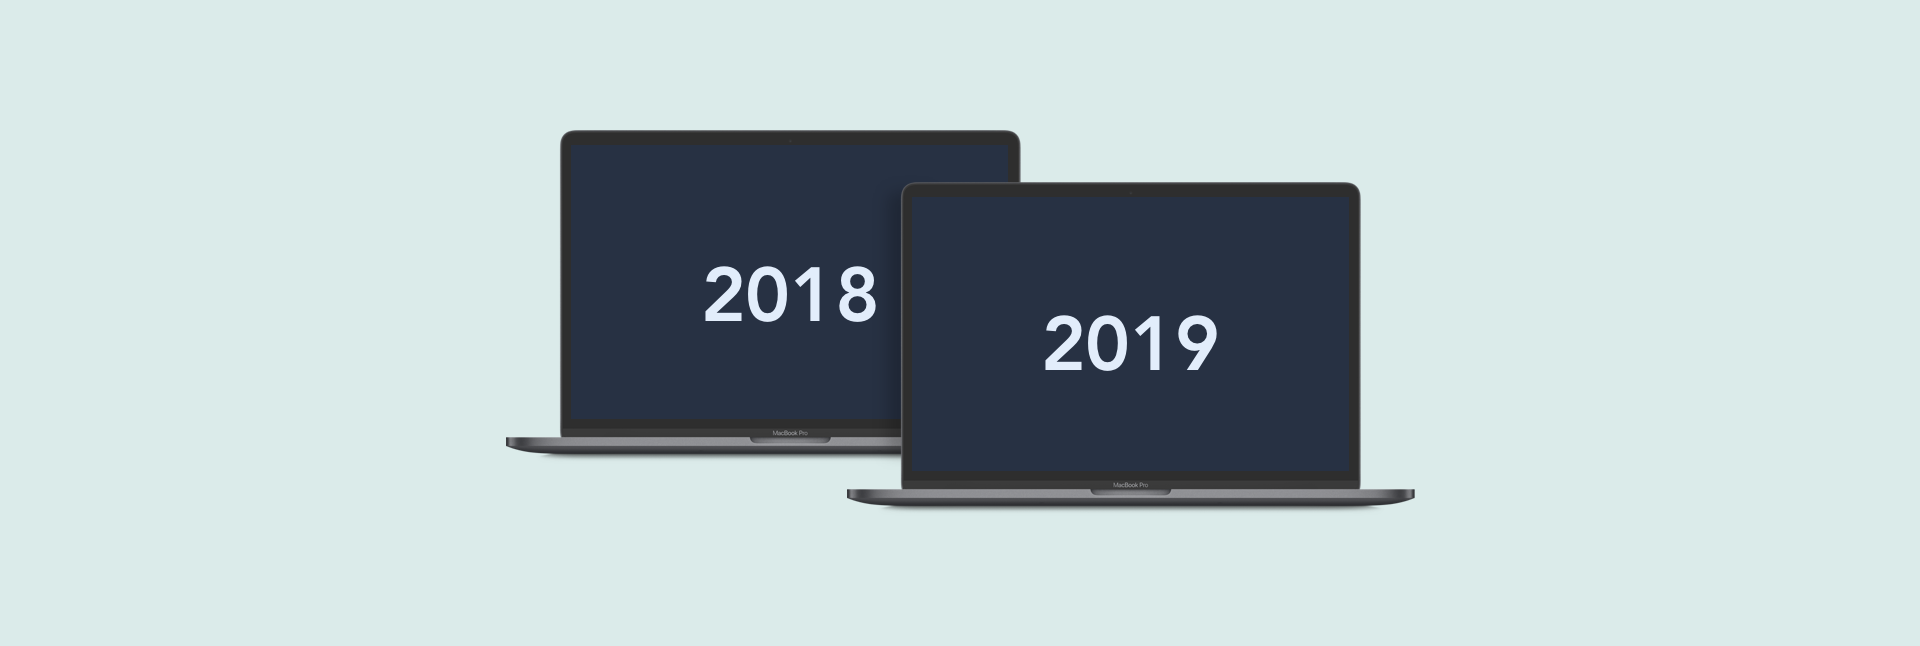 macbook vs macbook pro 2018